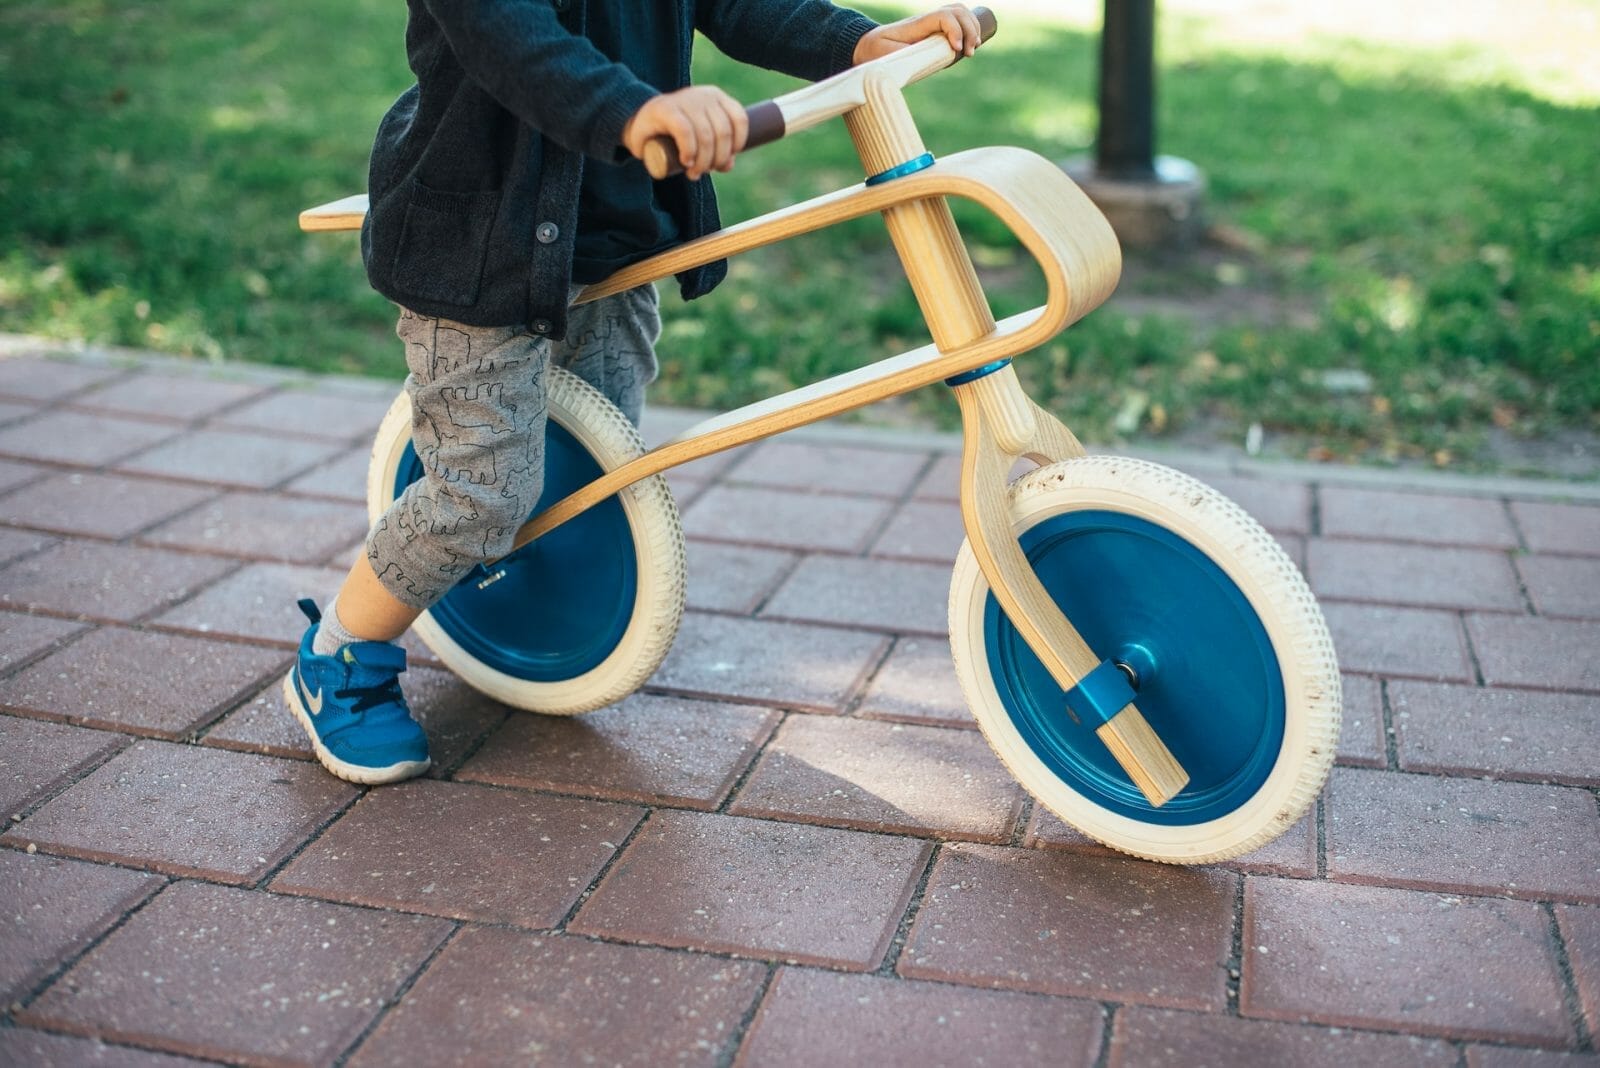 Criança pequena praticando com bicicleta de equilíbrio